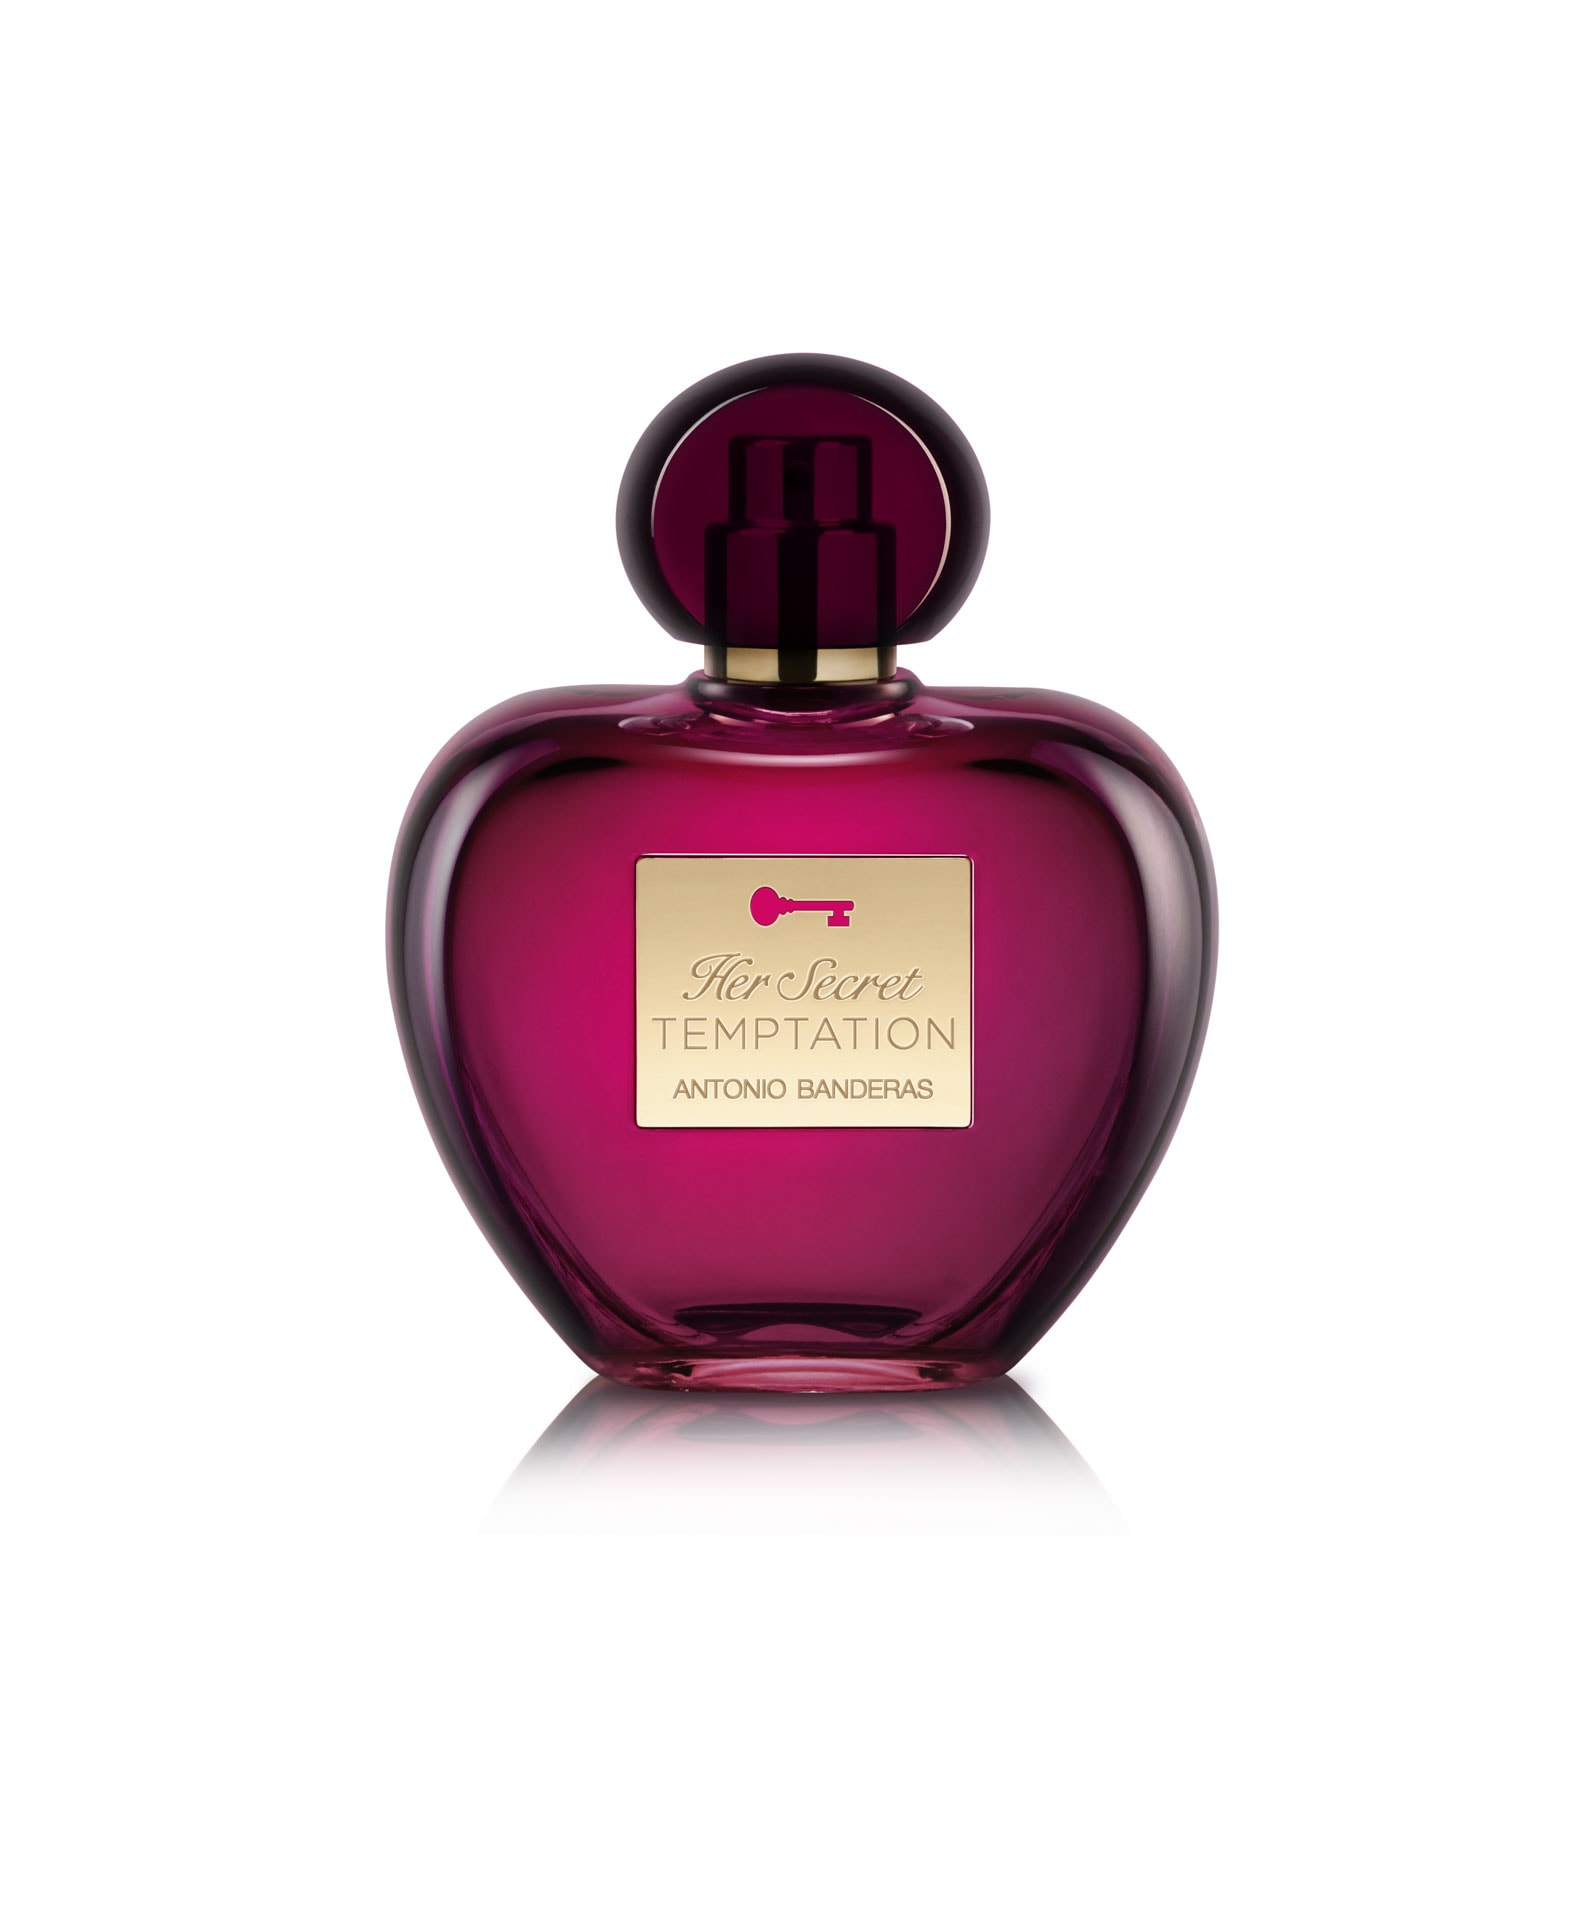 Her Secret Temptation » Antonio Banderas » The Parfumerie » Sri Lanka